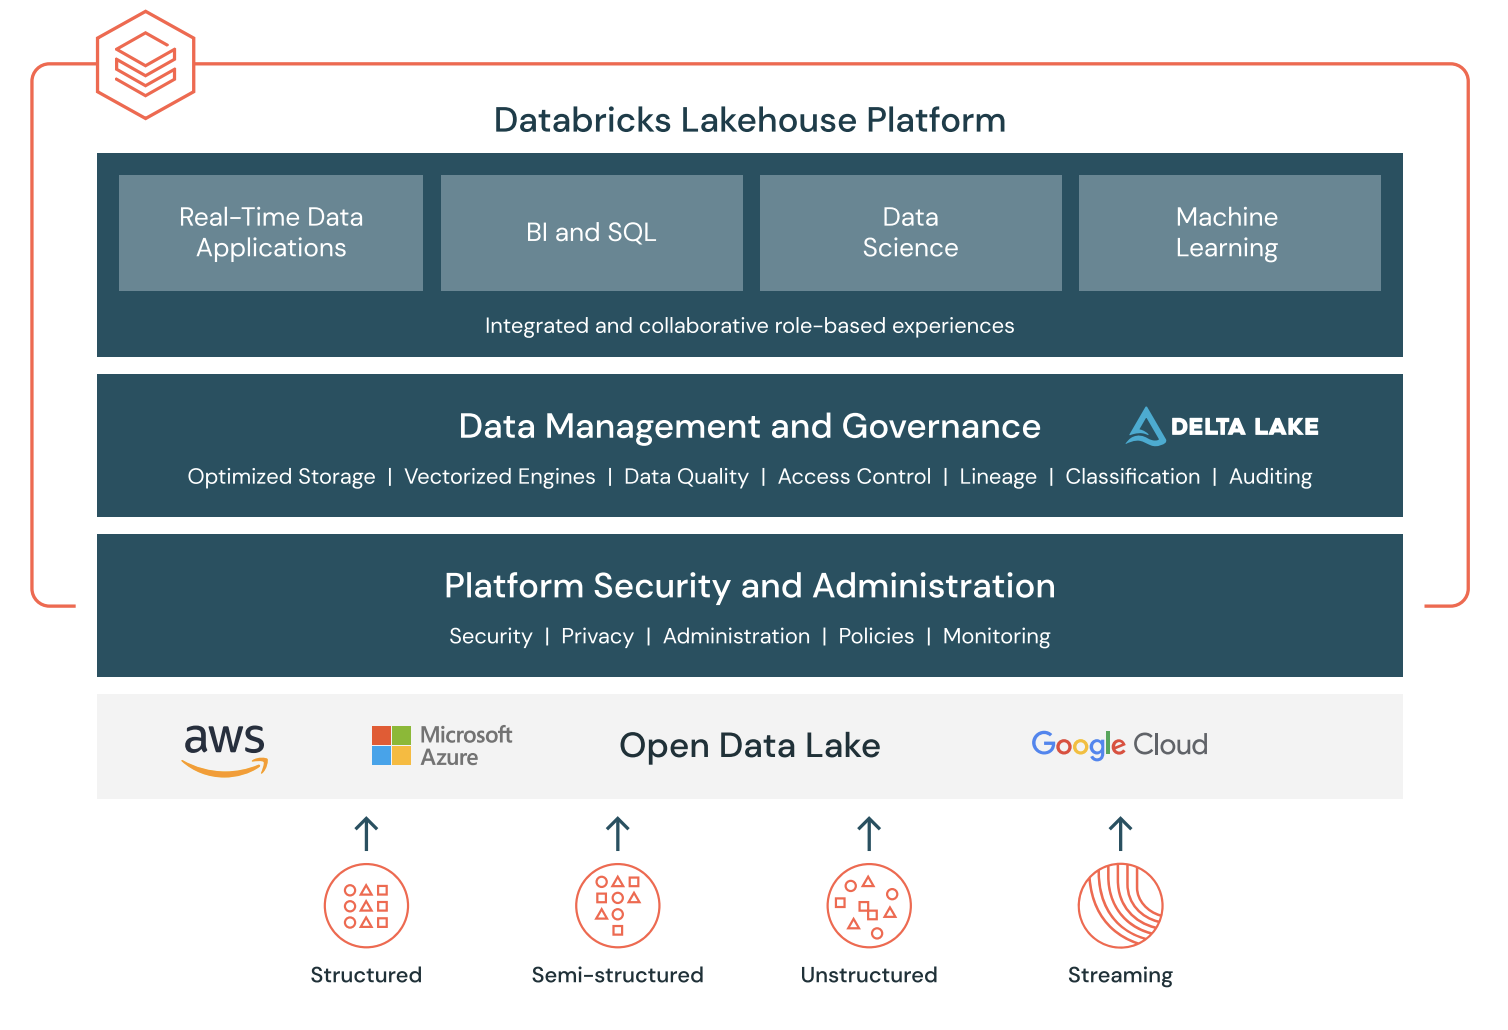 Databricks Lakehouse Platform